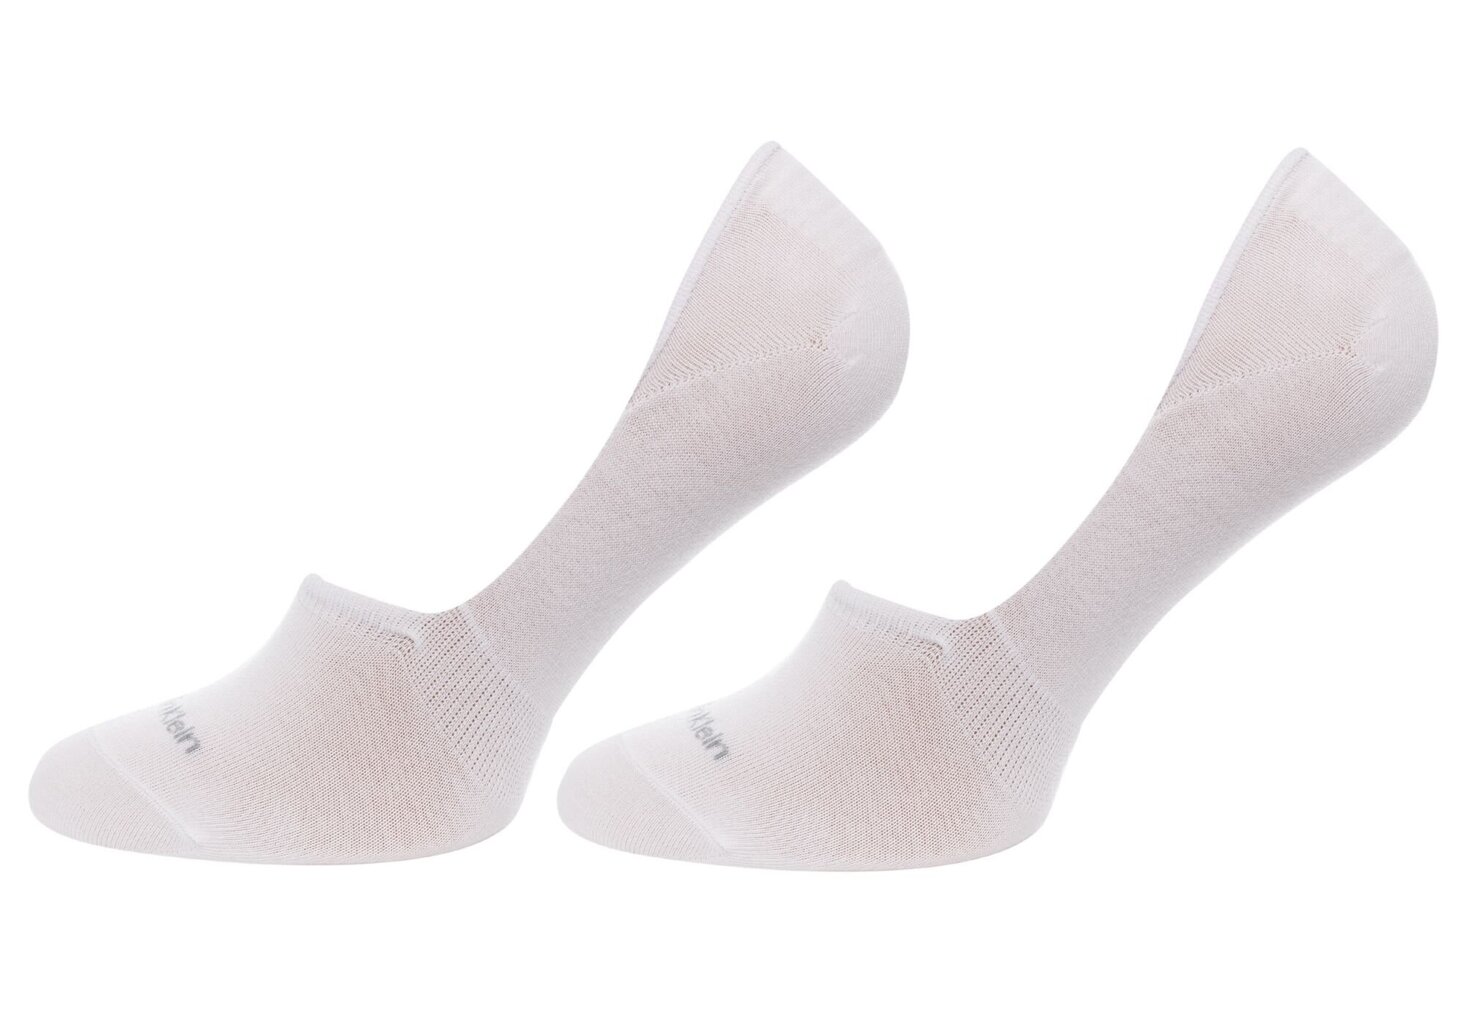 Kojinės vyrams Calvin Klein, 2 poros kaina ir informacija | Vyriškos kojinės | pigu.lt